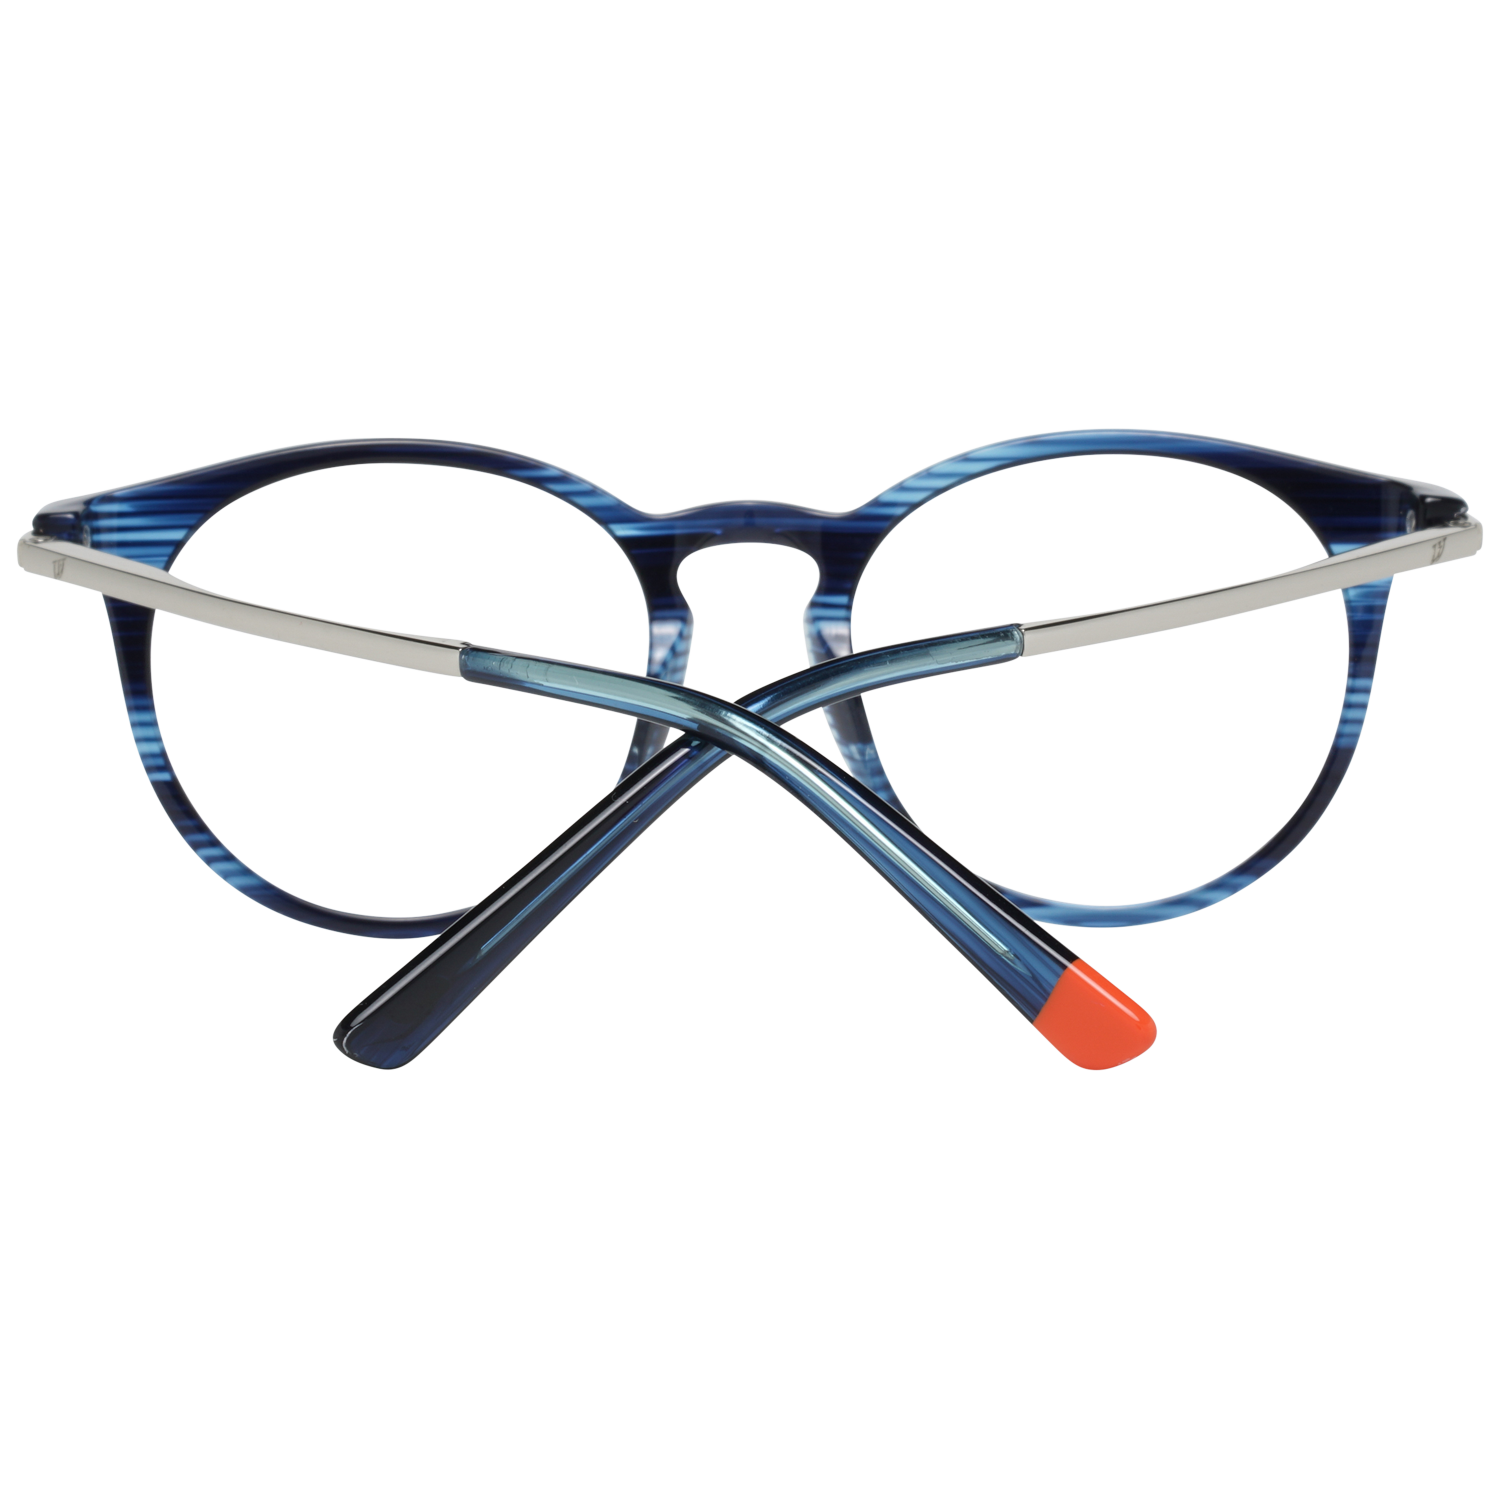 Web Frames Web Glasses Optical Frame WE5240 092 50 Eyeglasses Eyewear UK USA Australia 